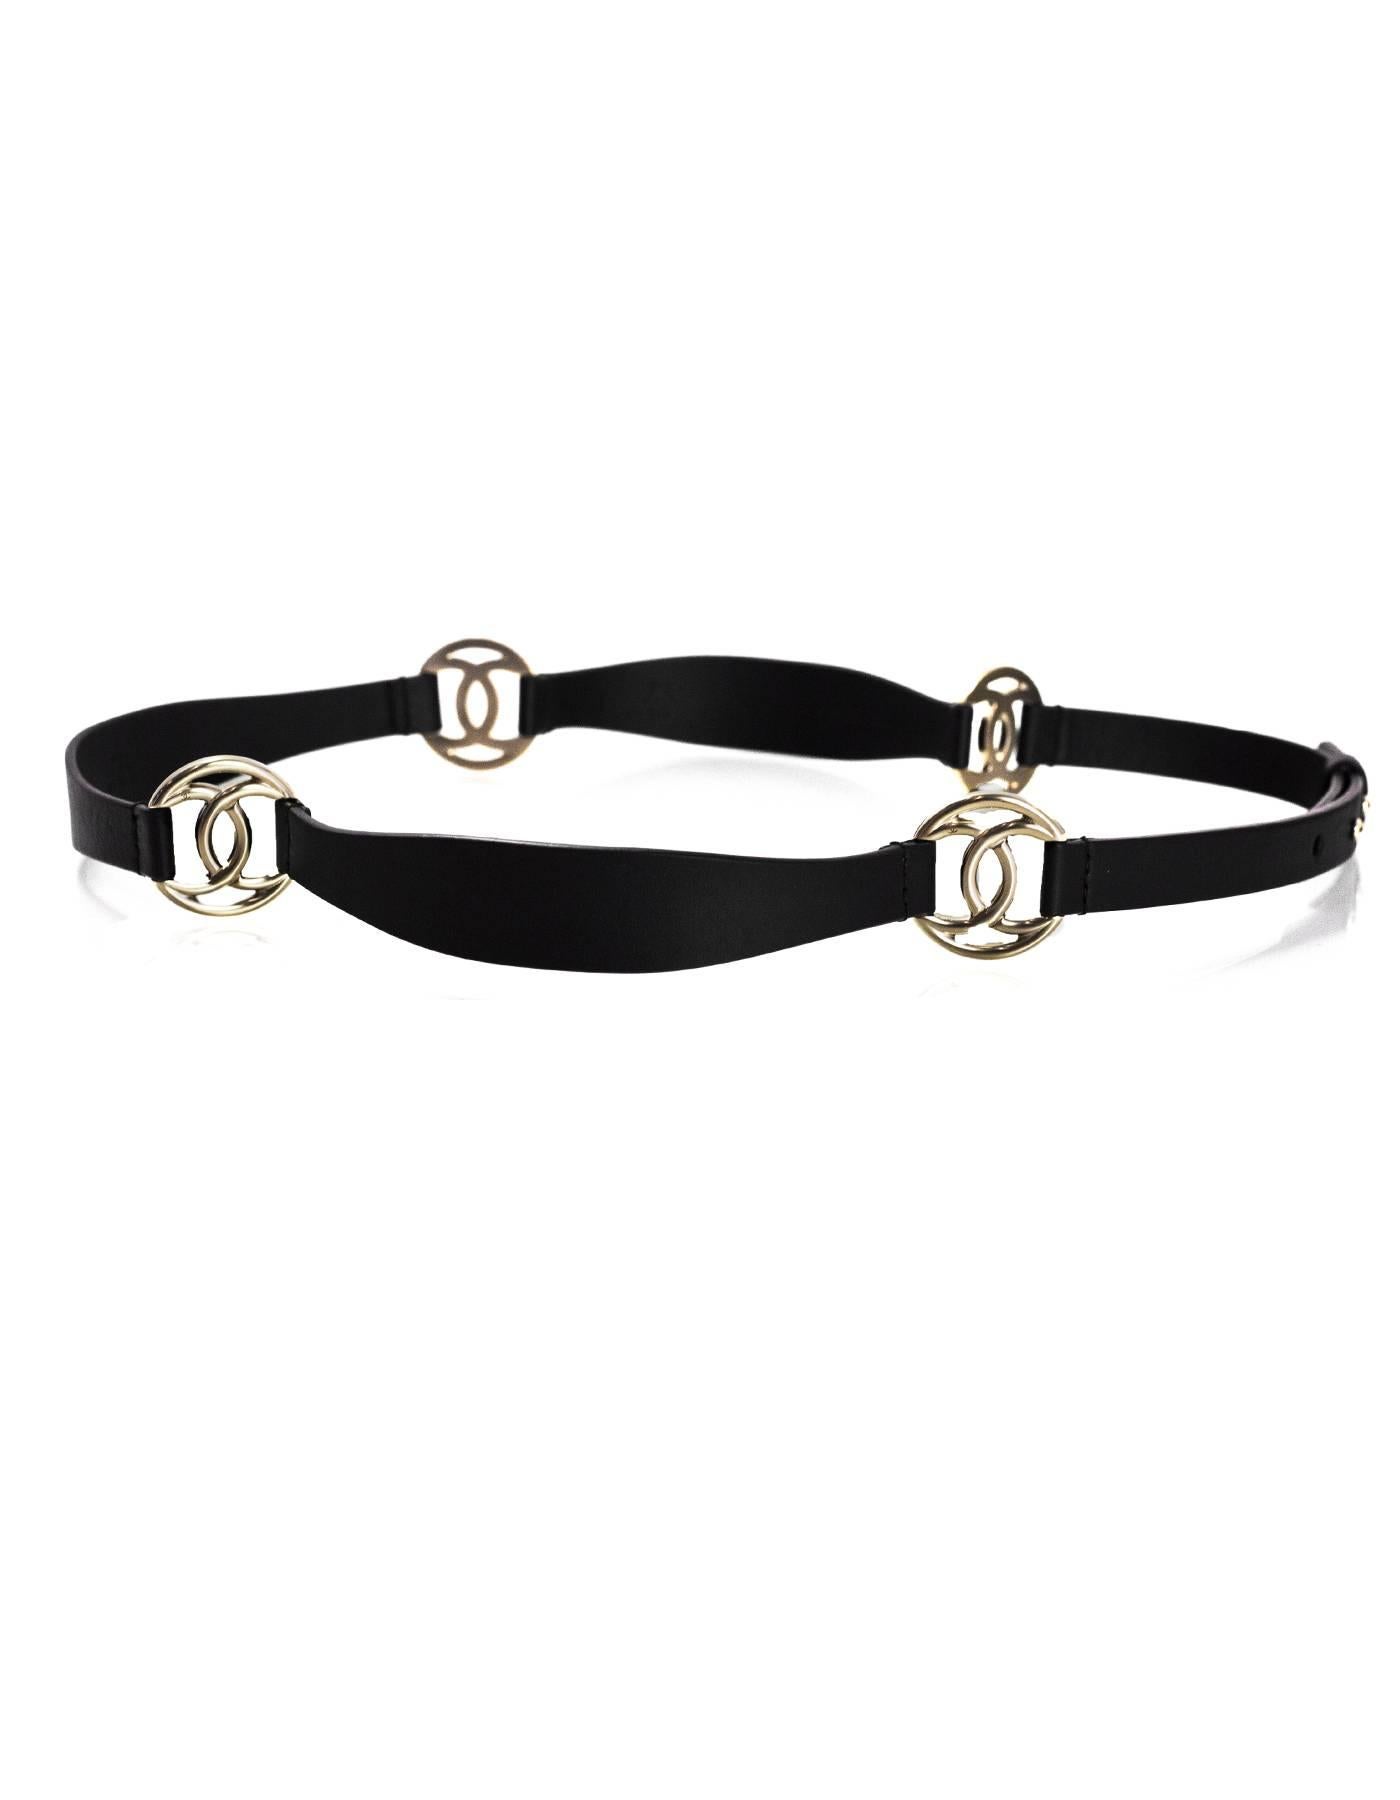 Chanel Black Leather & Pale Goldtone CC Belt Sz 85 1